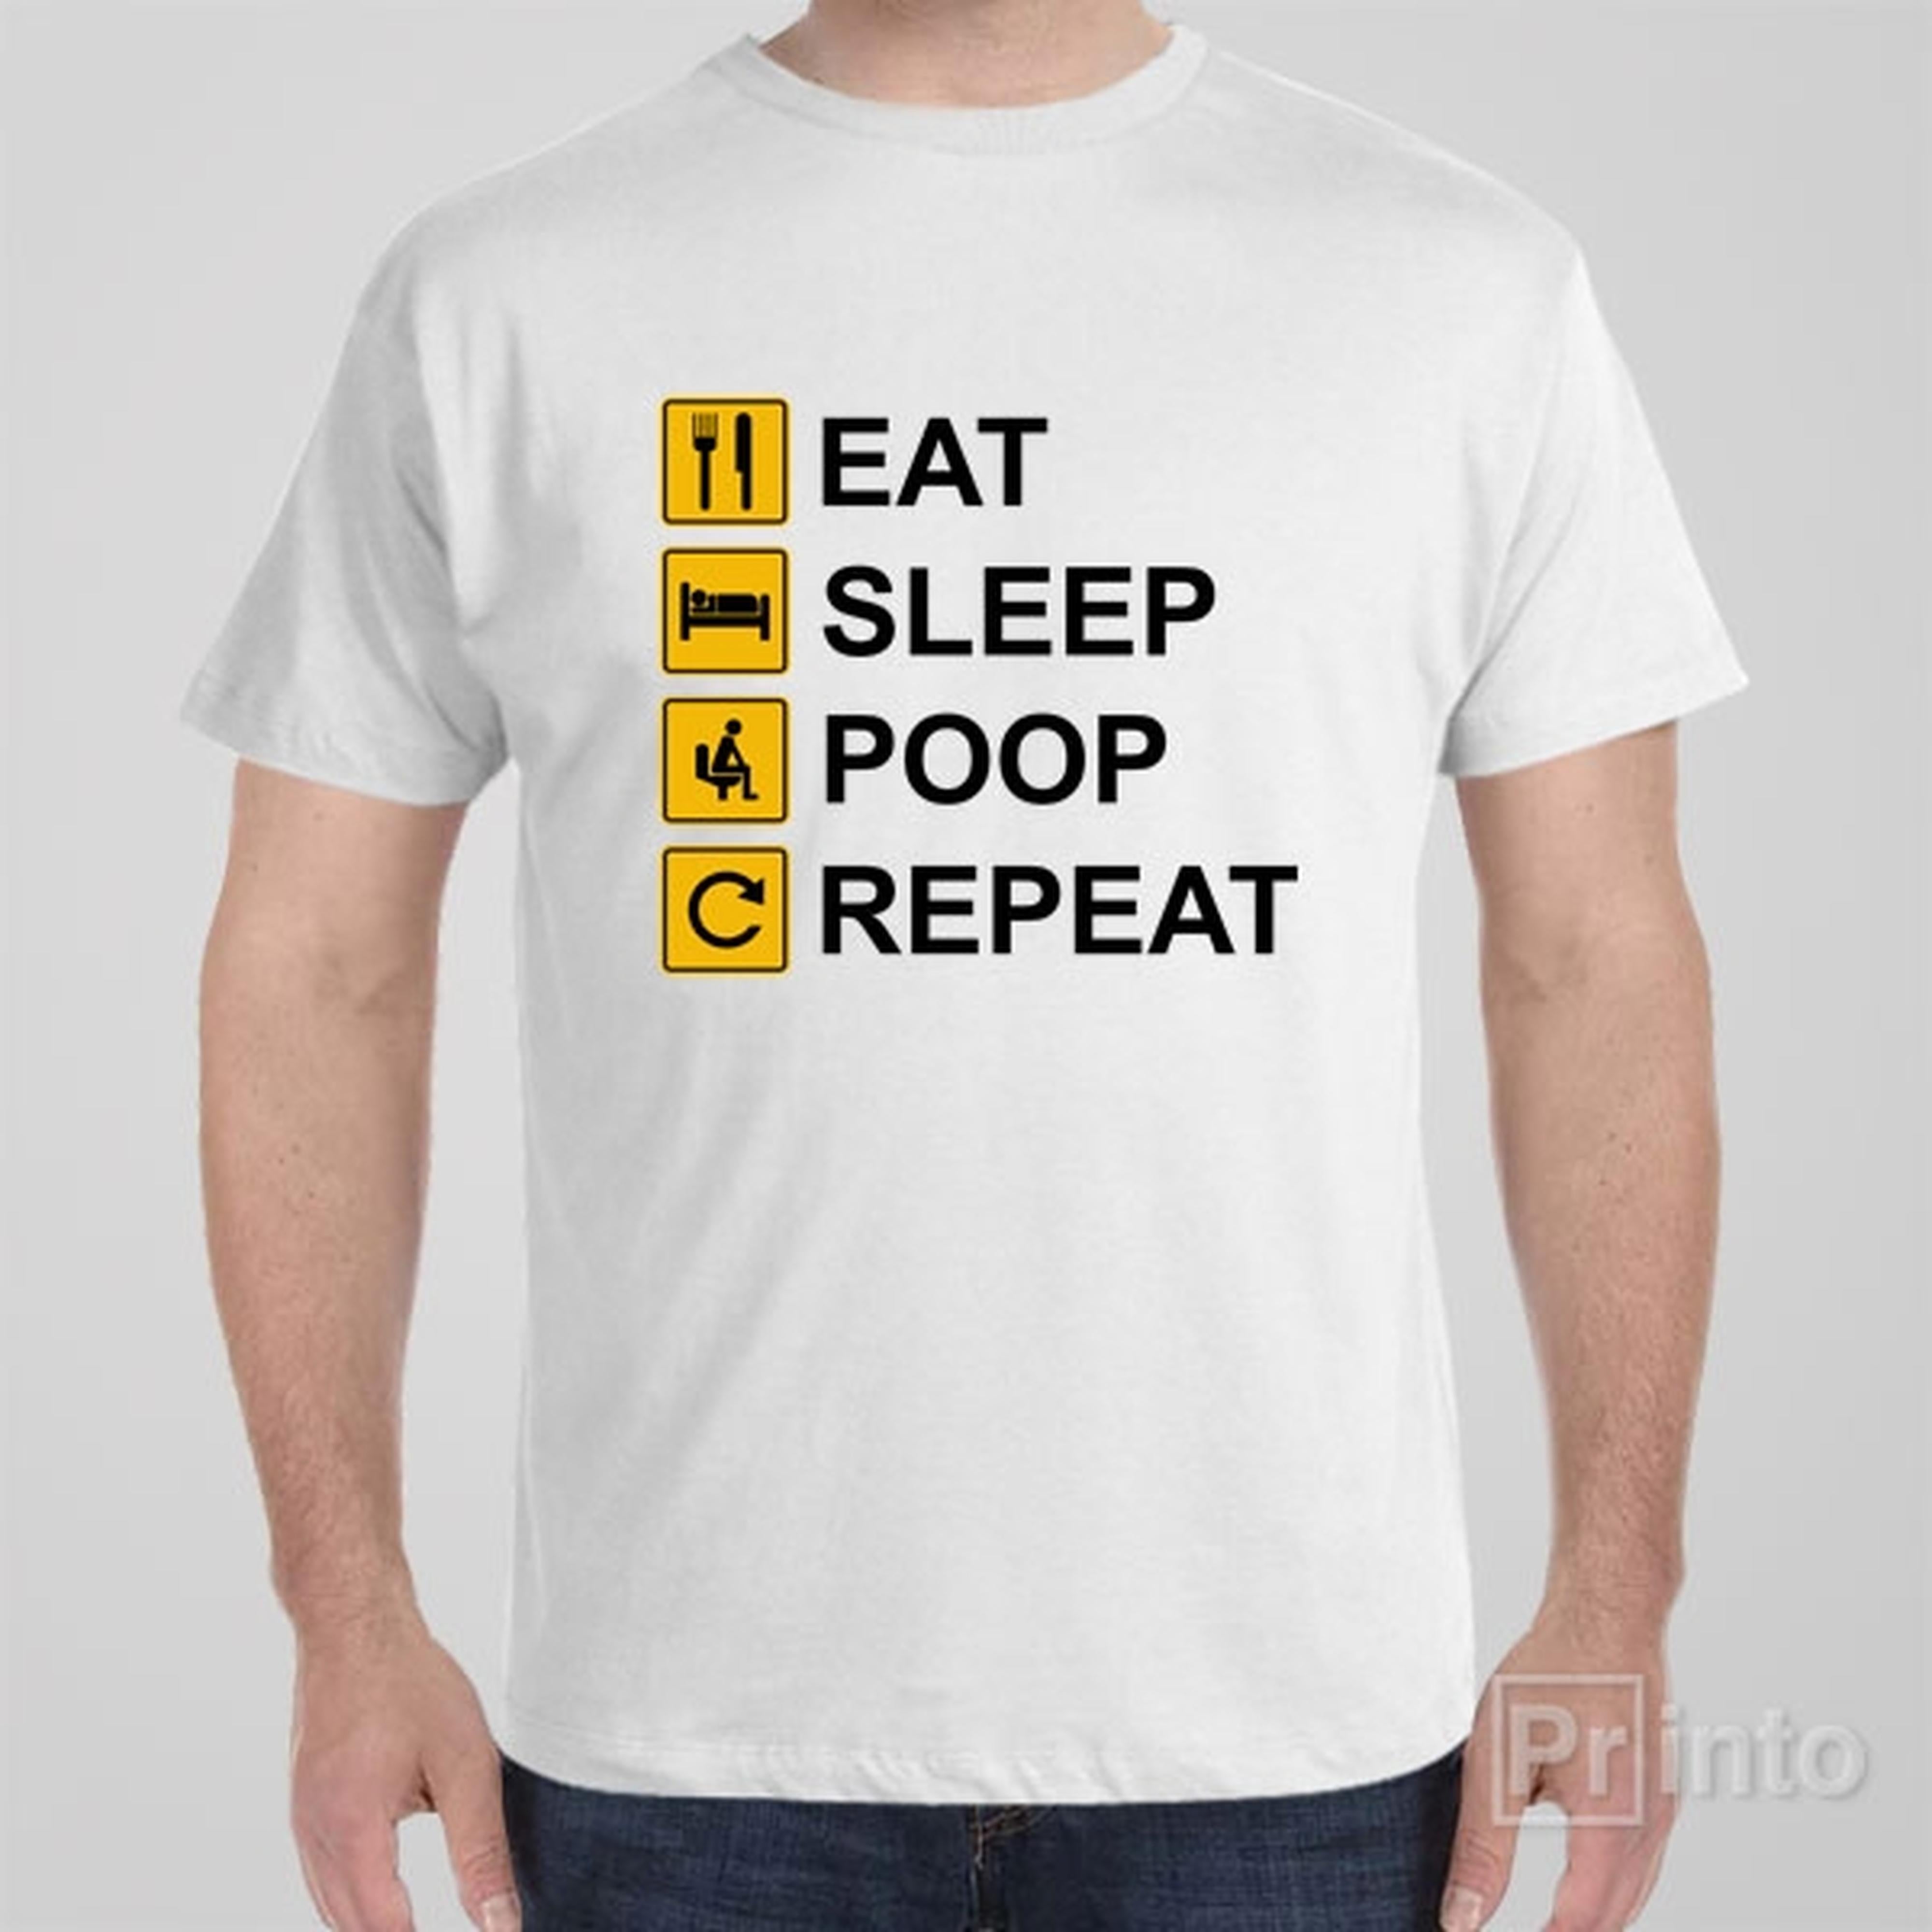 eat-sleep-poop-repeat-t-shirt